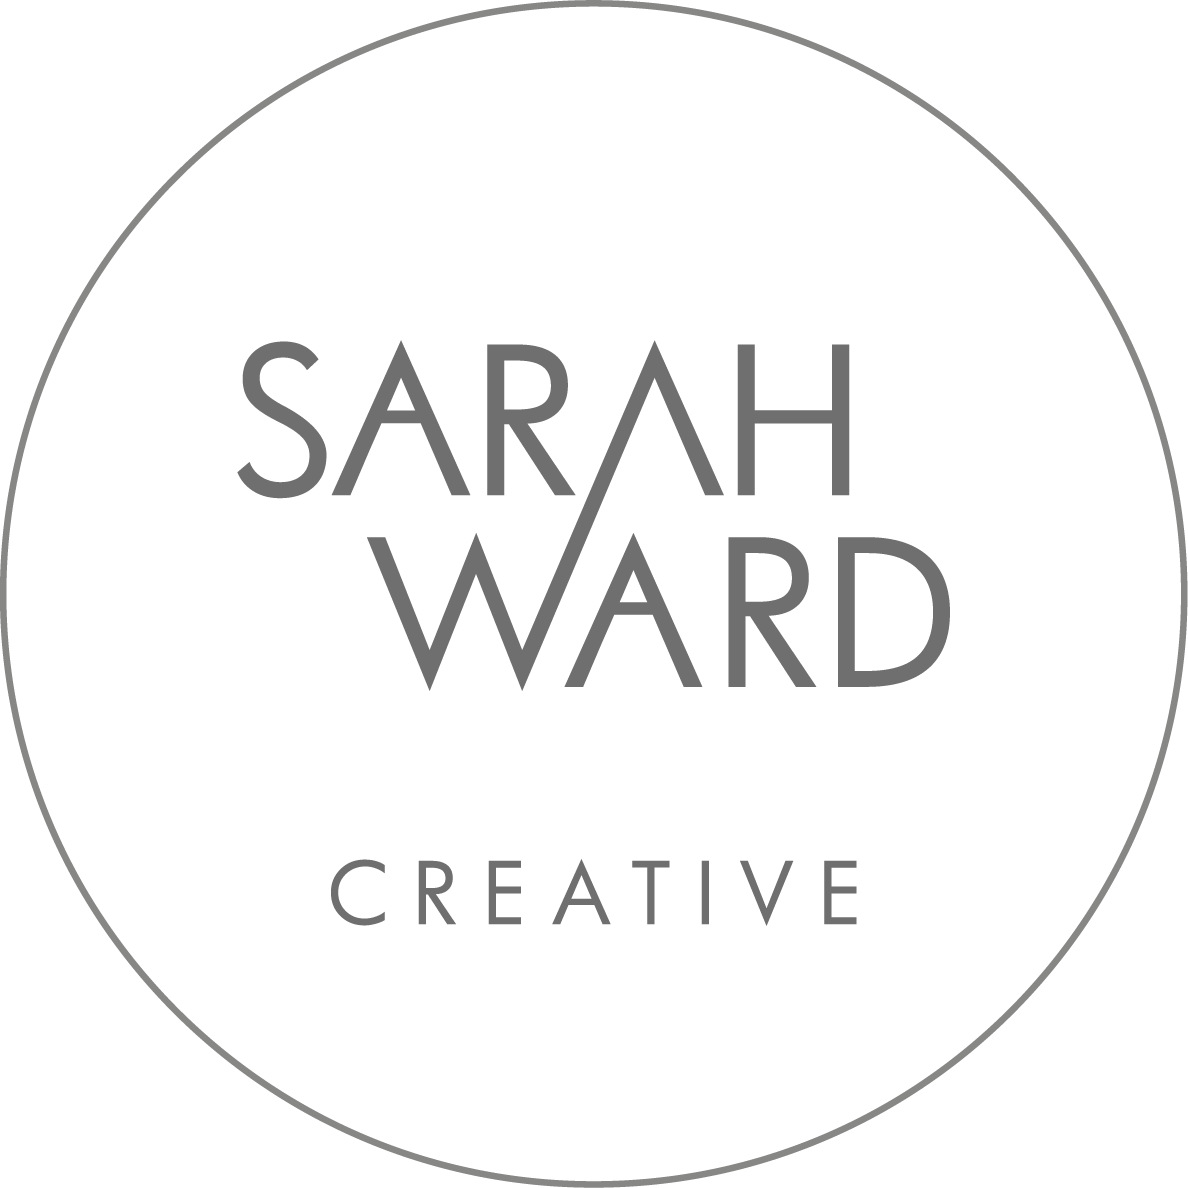 Sarah Ward Creative